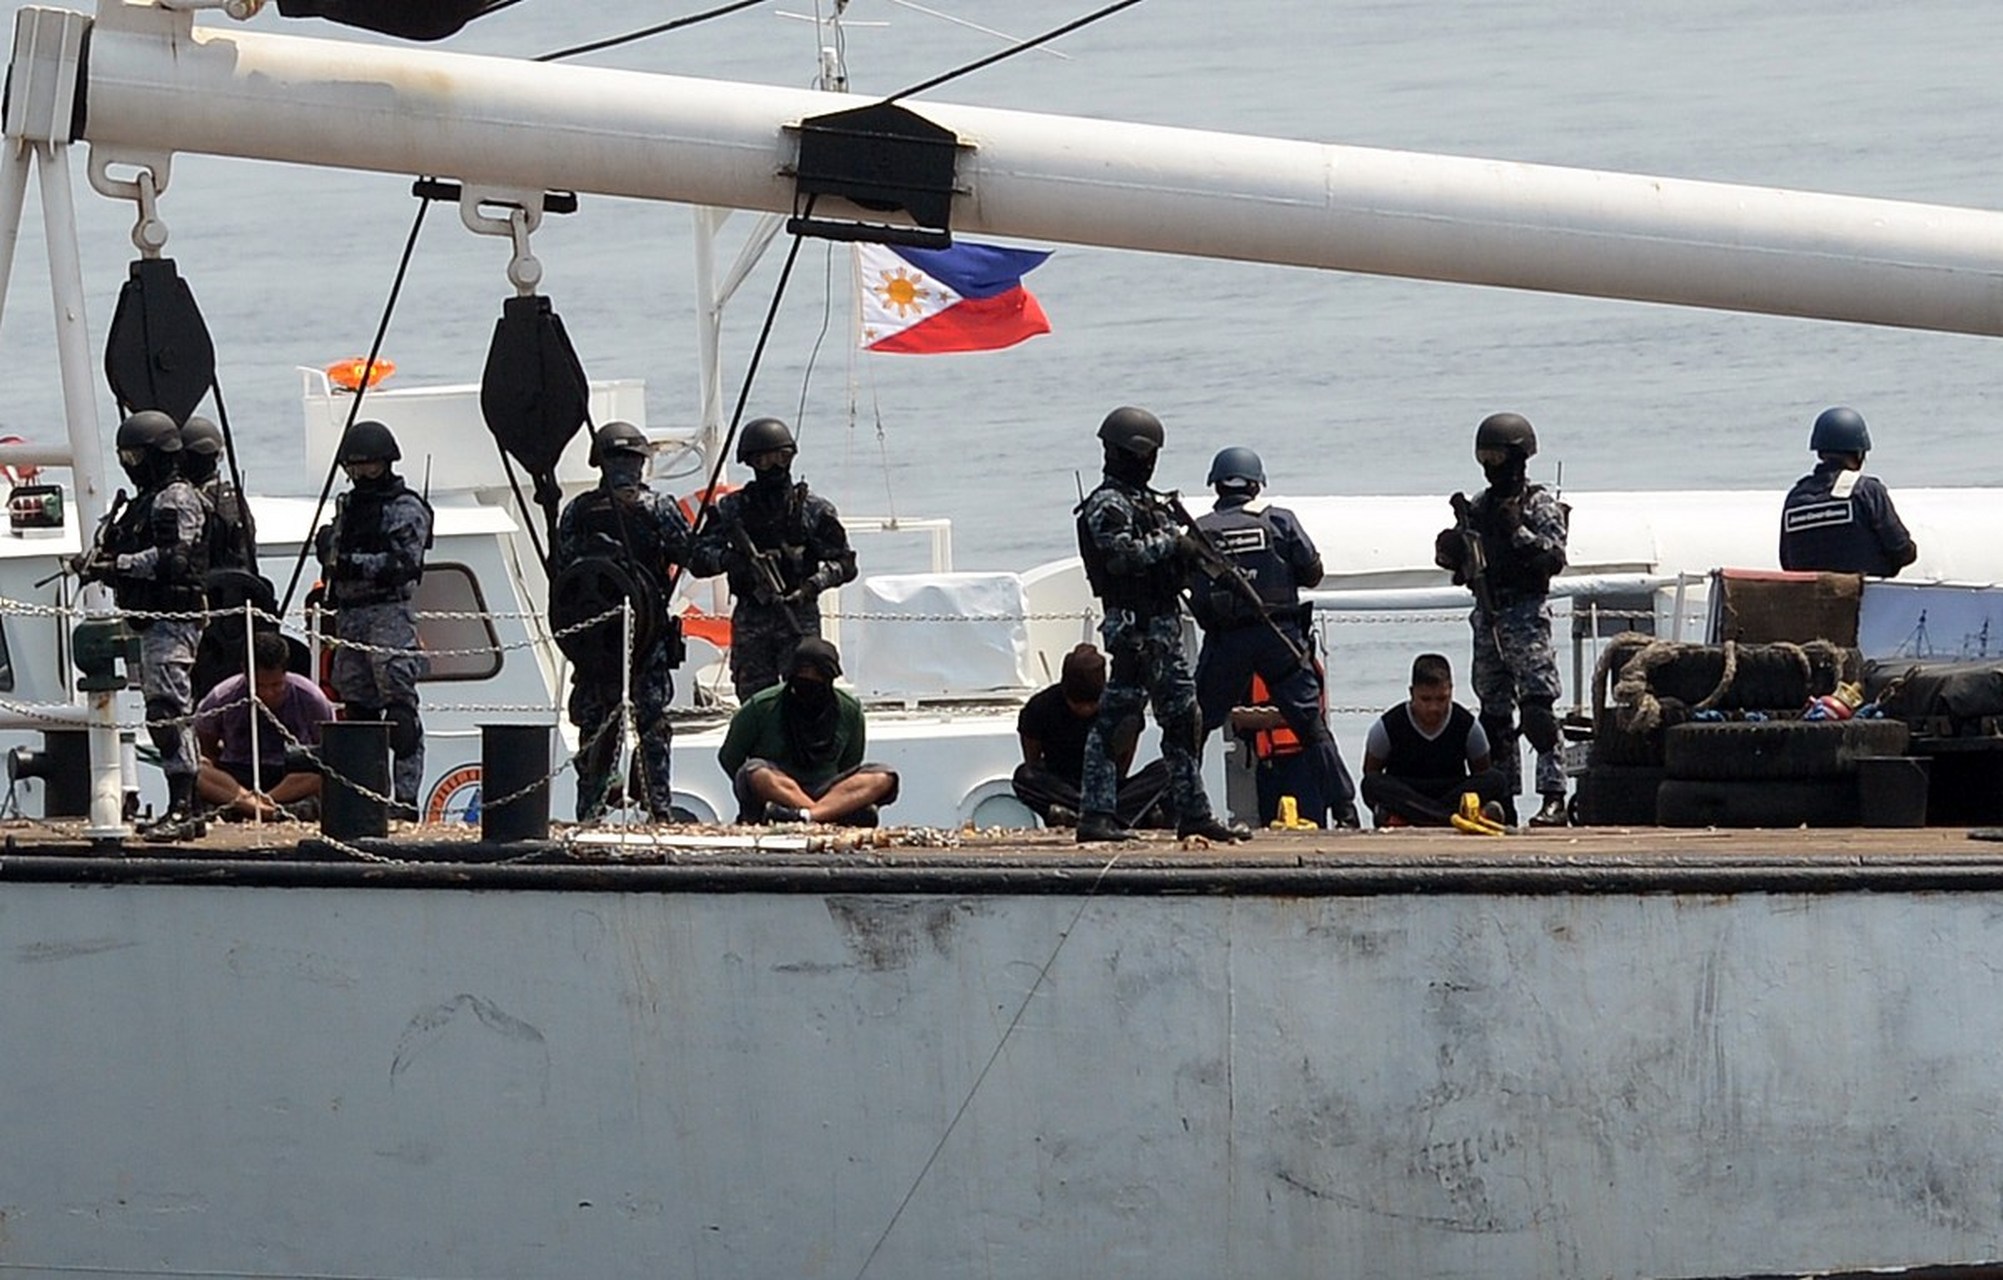 菲律宾指中国军舰危险拦截两艘菲船只  菲律宾海岸警卫队指控中国巡逻